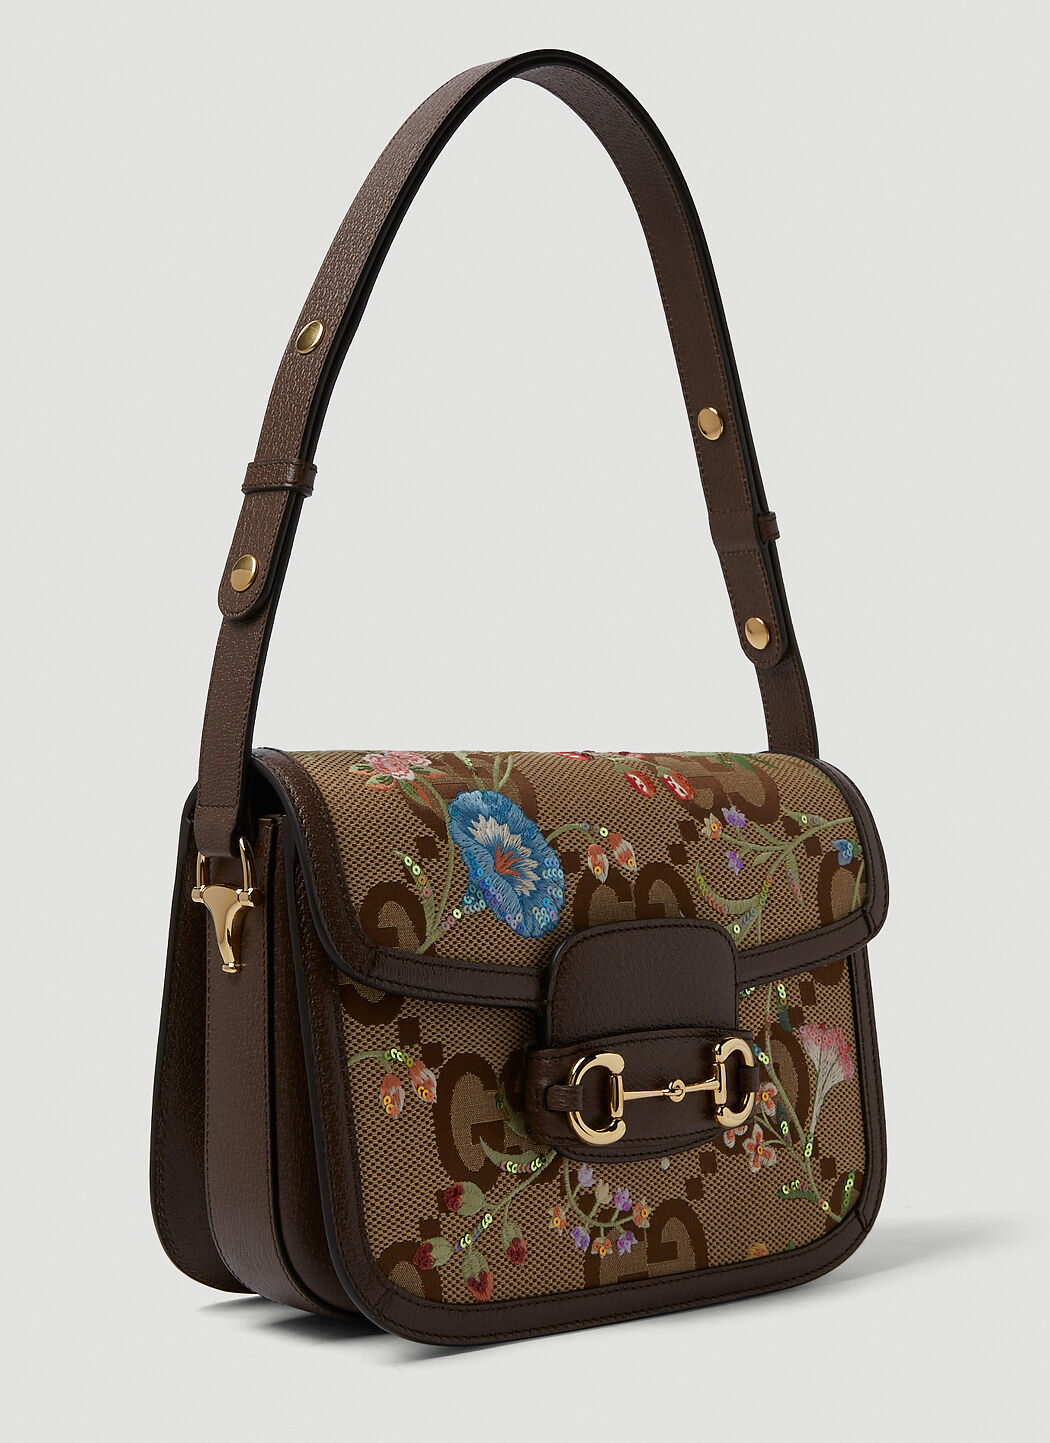 Gucci Horsebit bag - Gallery - McNeel Forum